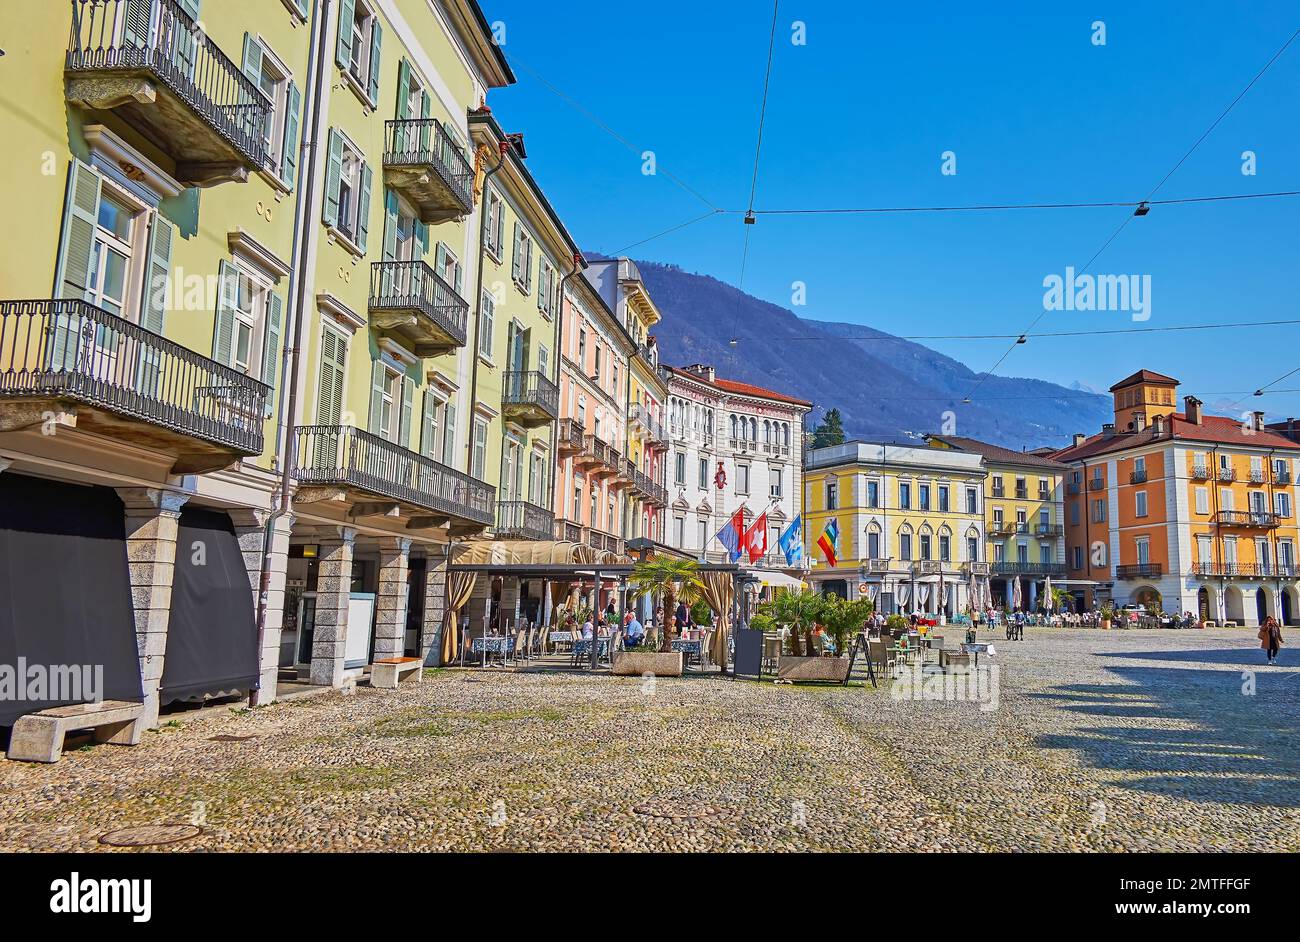 Las casas adosadas, tiendas y restaurantes en la plaza Piazza Grande, situado en el centro de la ciudad vieja, Locarno, Suiza Foto de stock